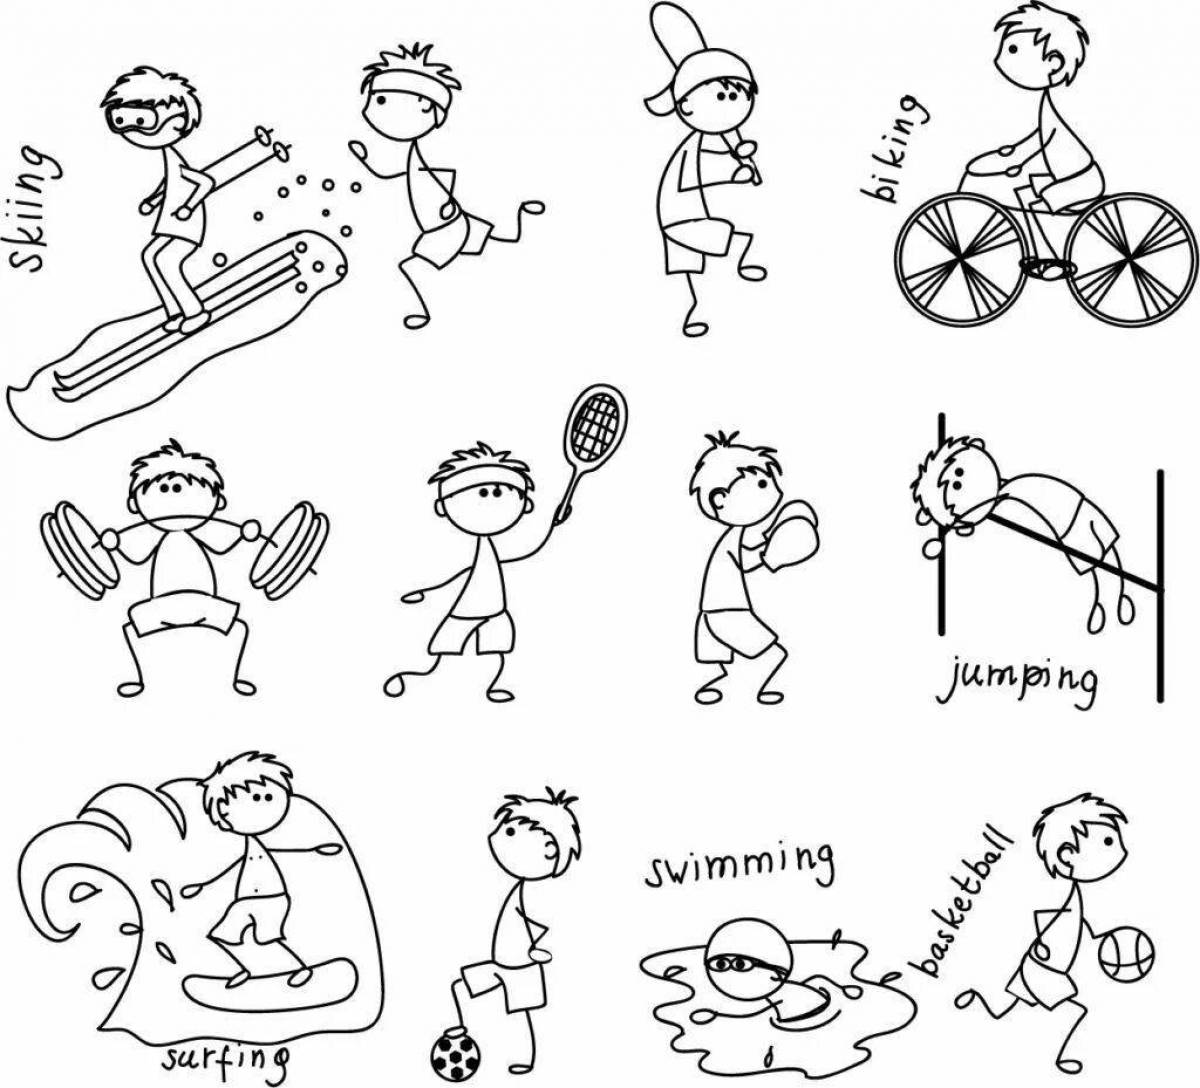 Динамичная раскраска спортсмены различных видов спорта для детей